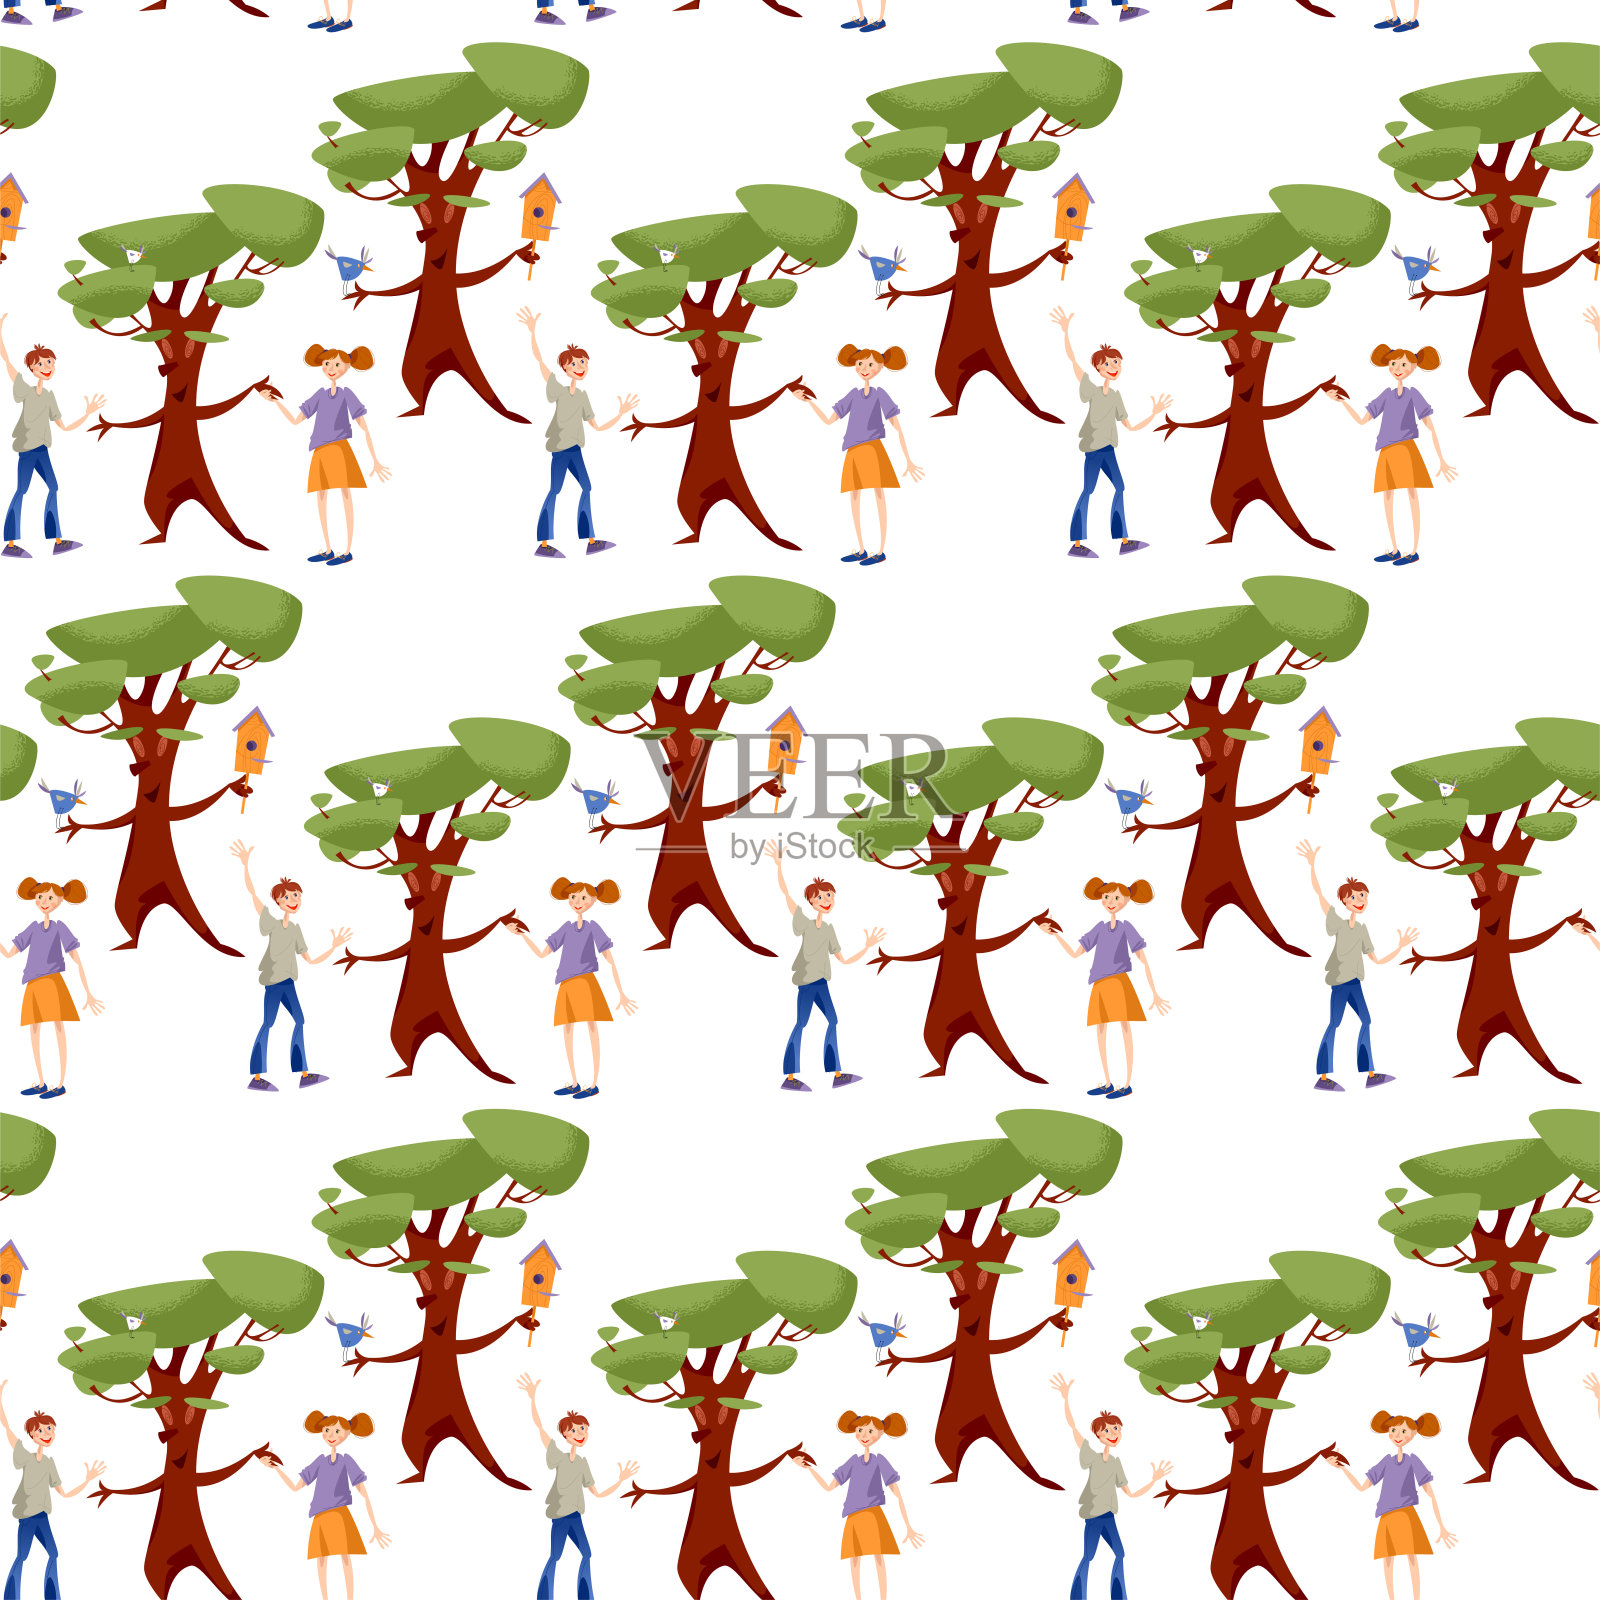 一个男孩和一个女孩向一棵树打招呼，手牵着手。无缝的背景图案。插画图片素材